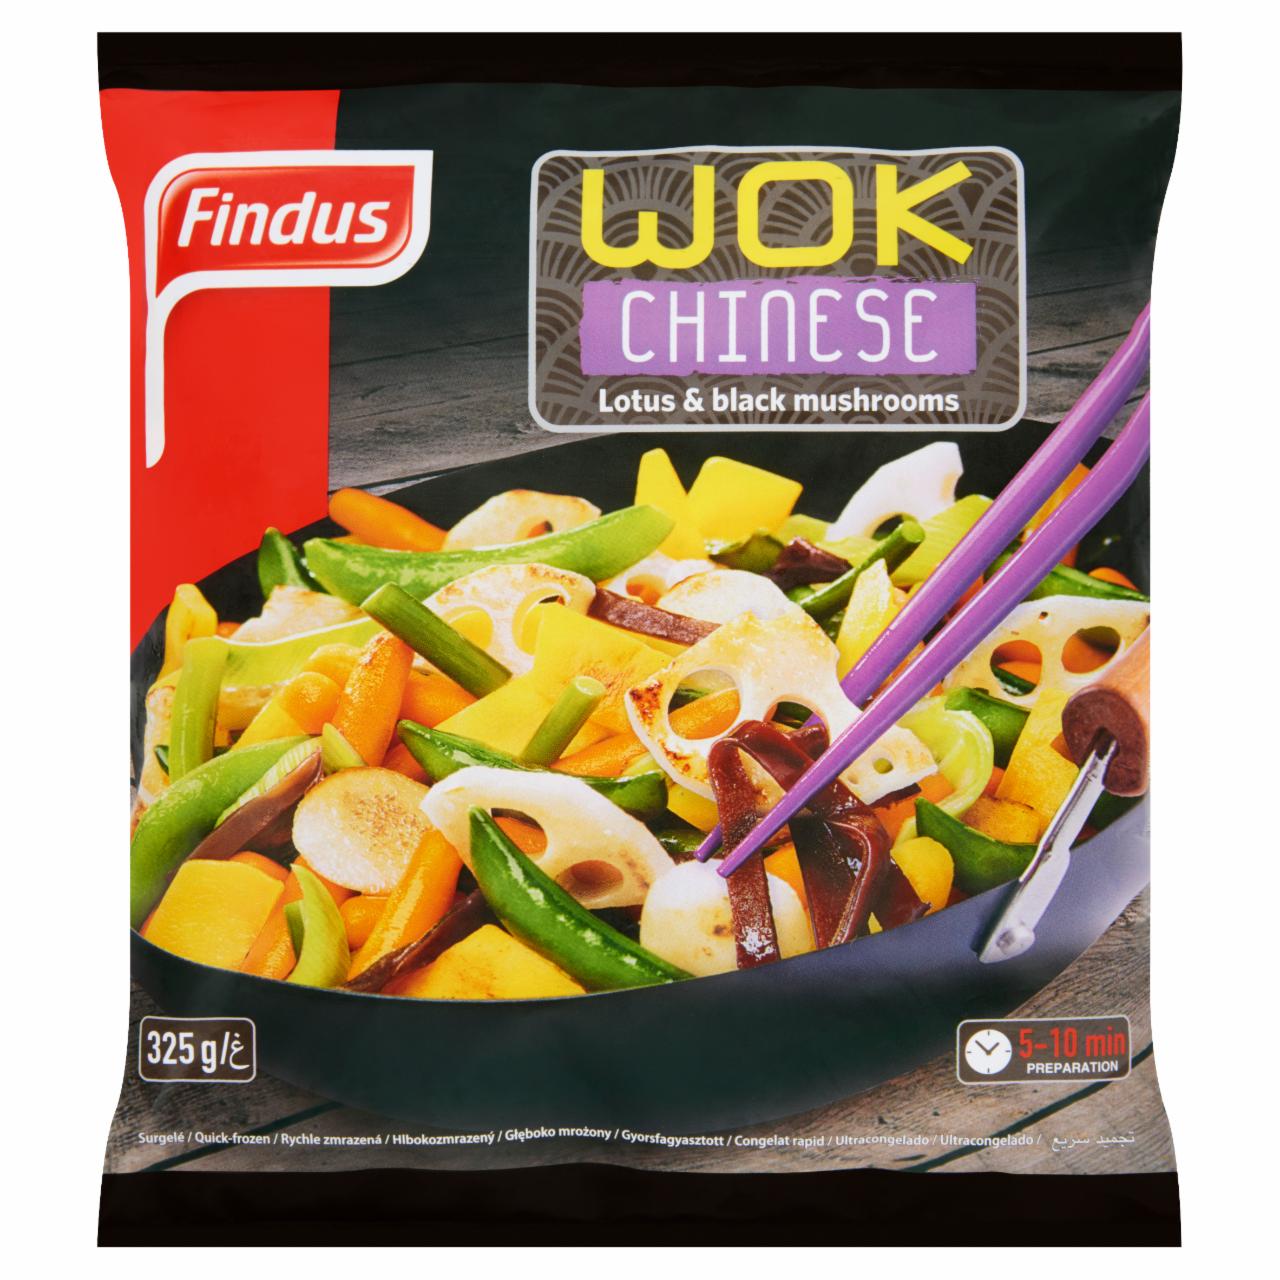 Képek - Findus Wok Chinese gyorsfagyasztott enyhén fűszerezett wok zöldségkeverék 325 g